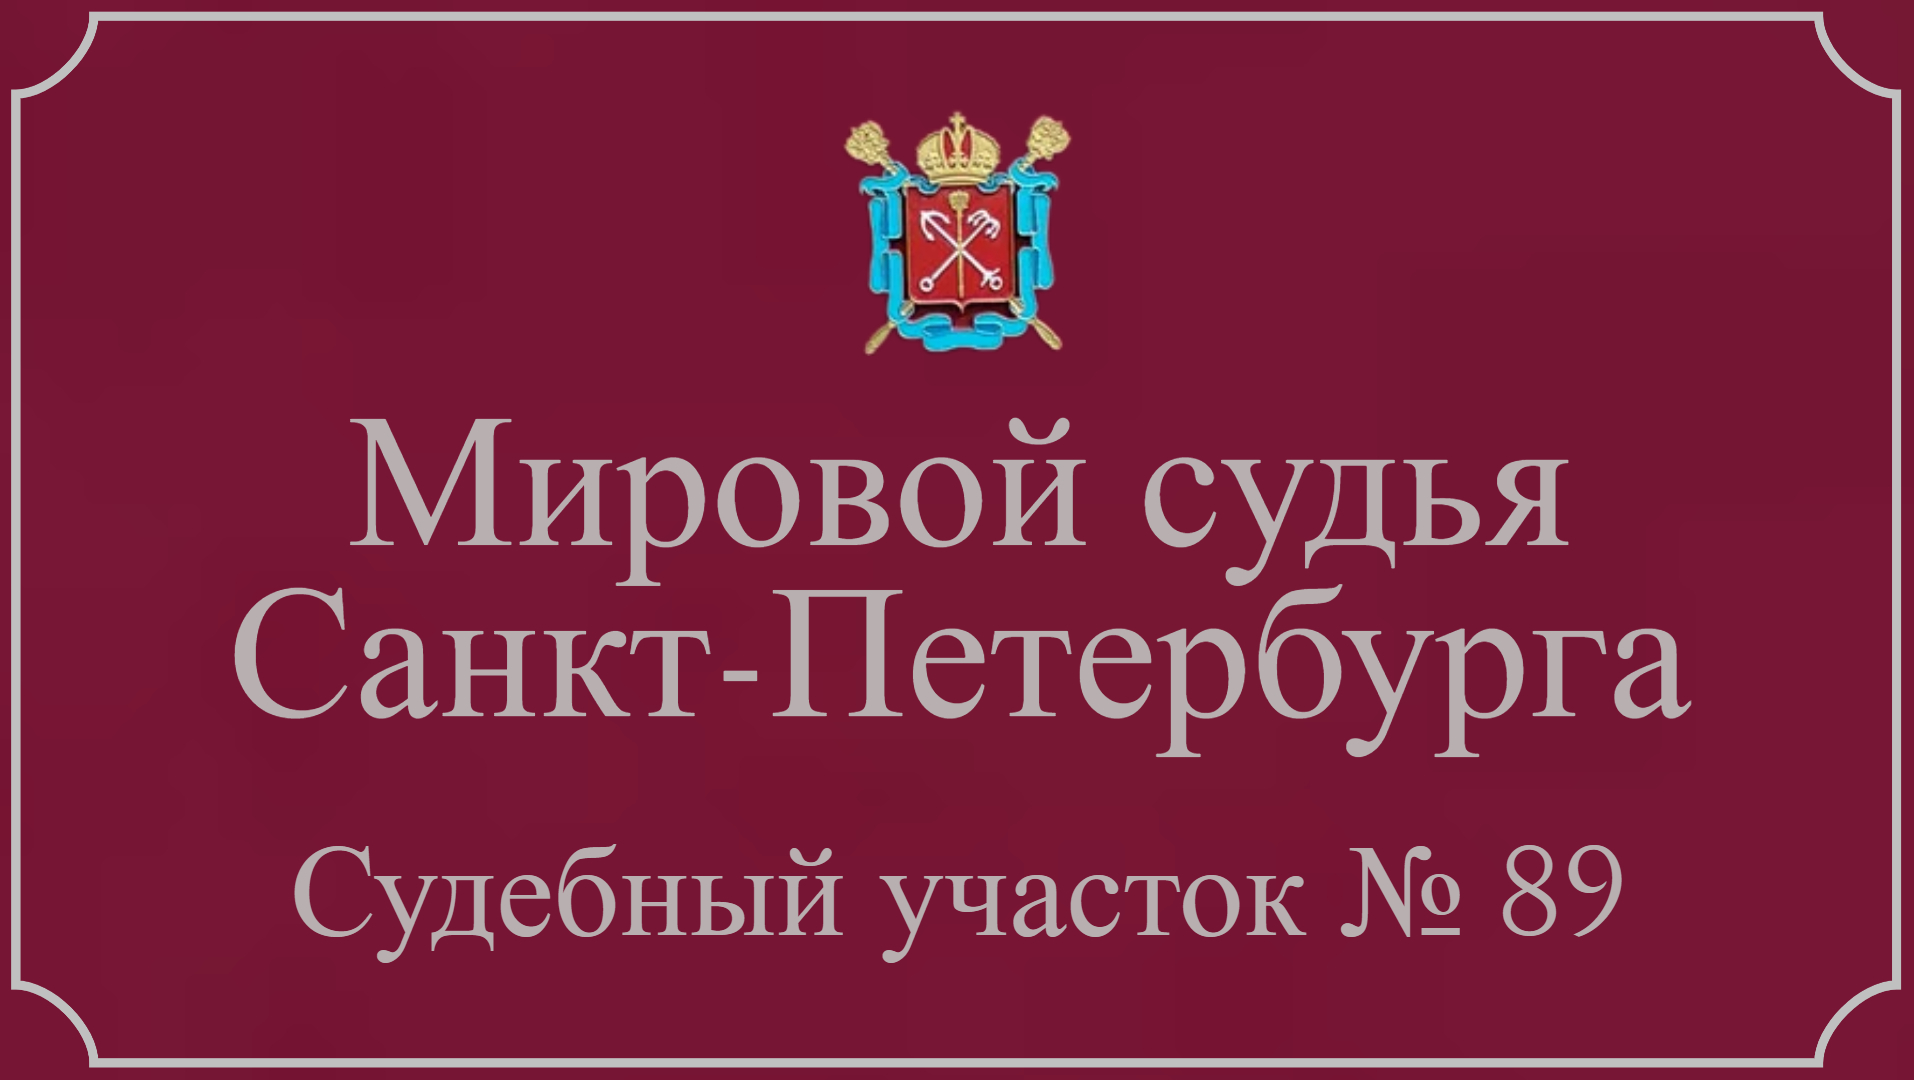 Информация по 89 судебному участку в Санкт-Петербурге.